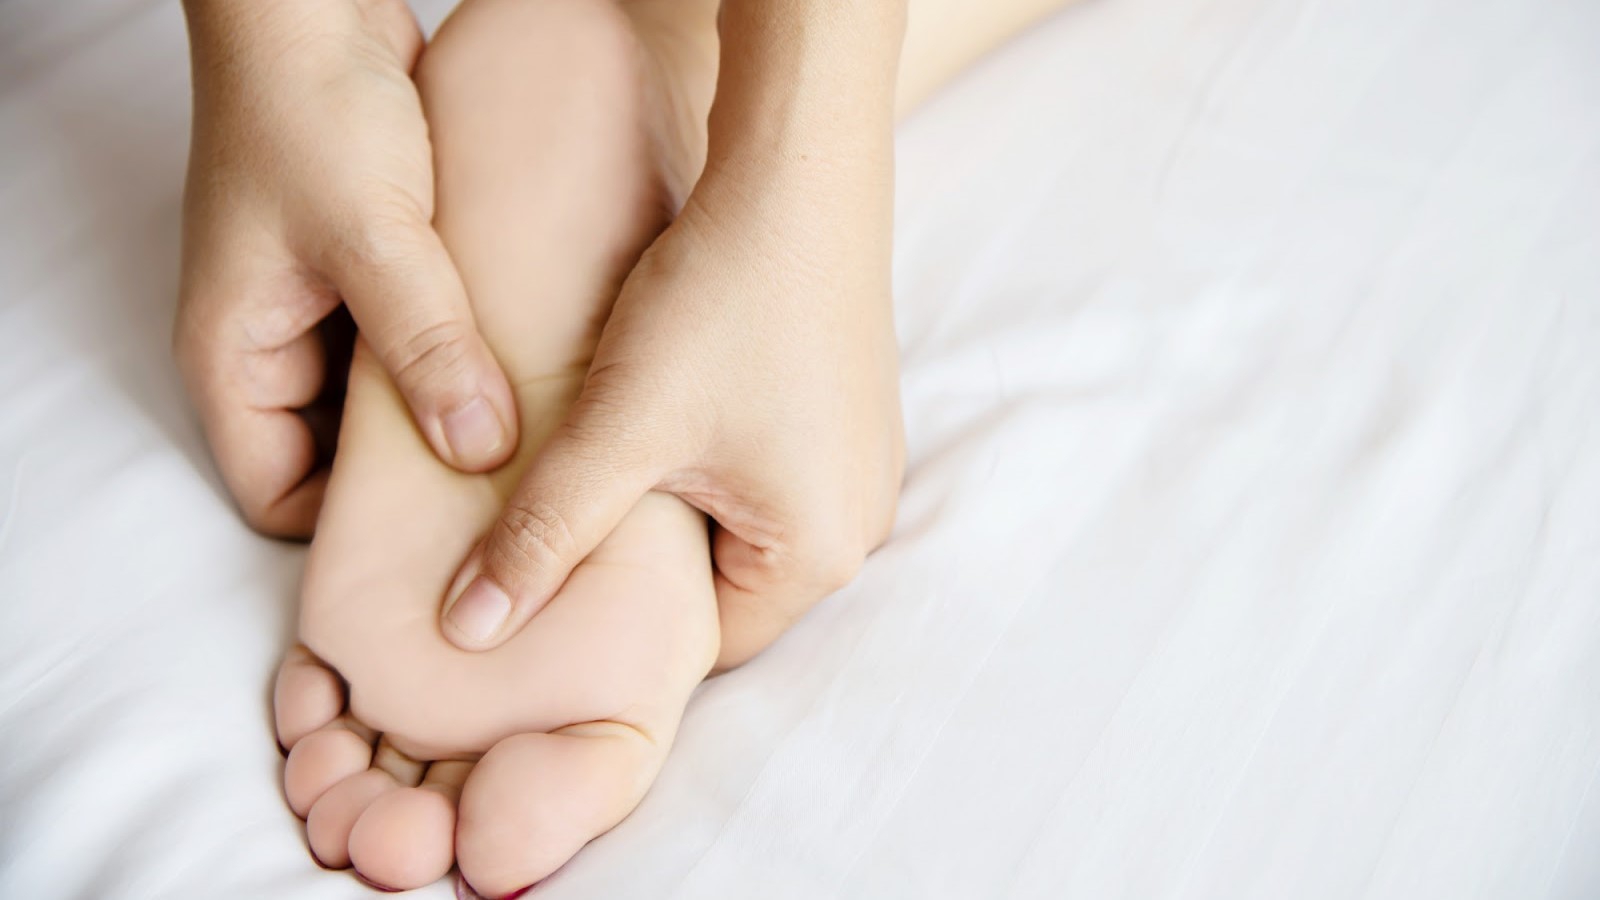 Nguyên nhân và cách giảm đau sáng ngủ dậy bị đau lòng bàn chân như thế nào?